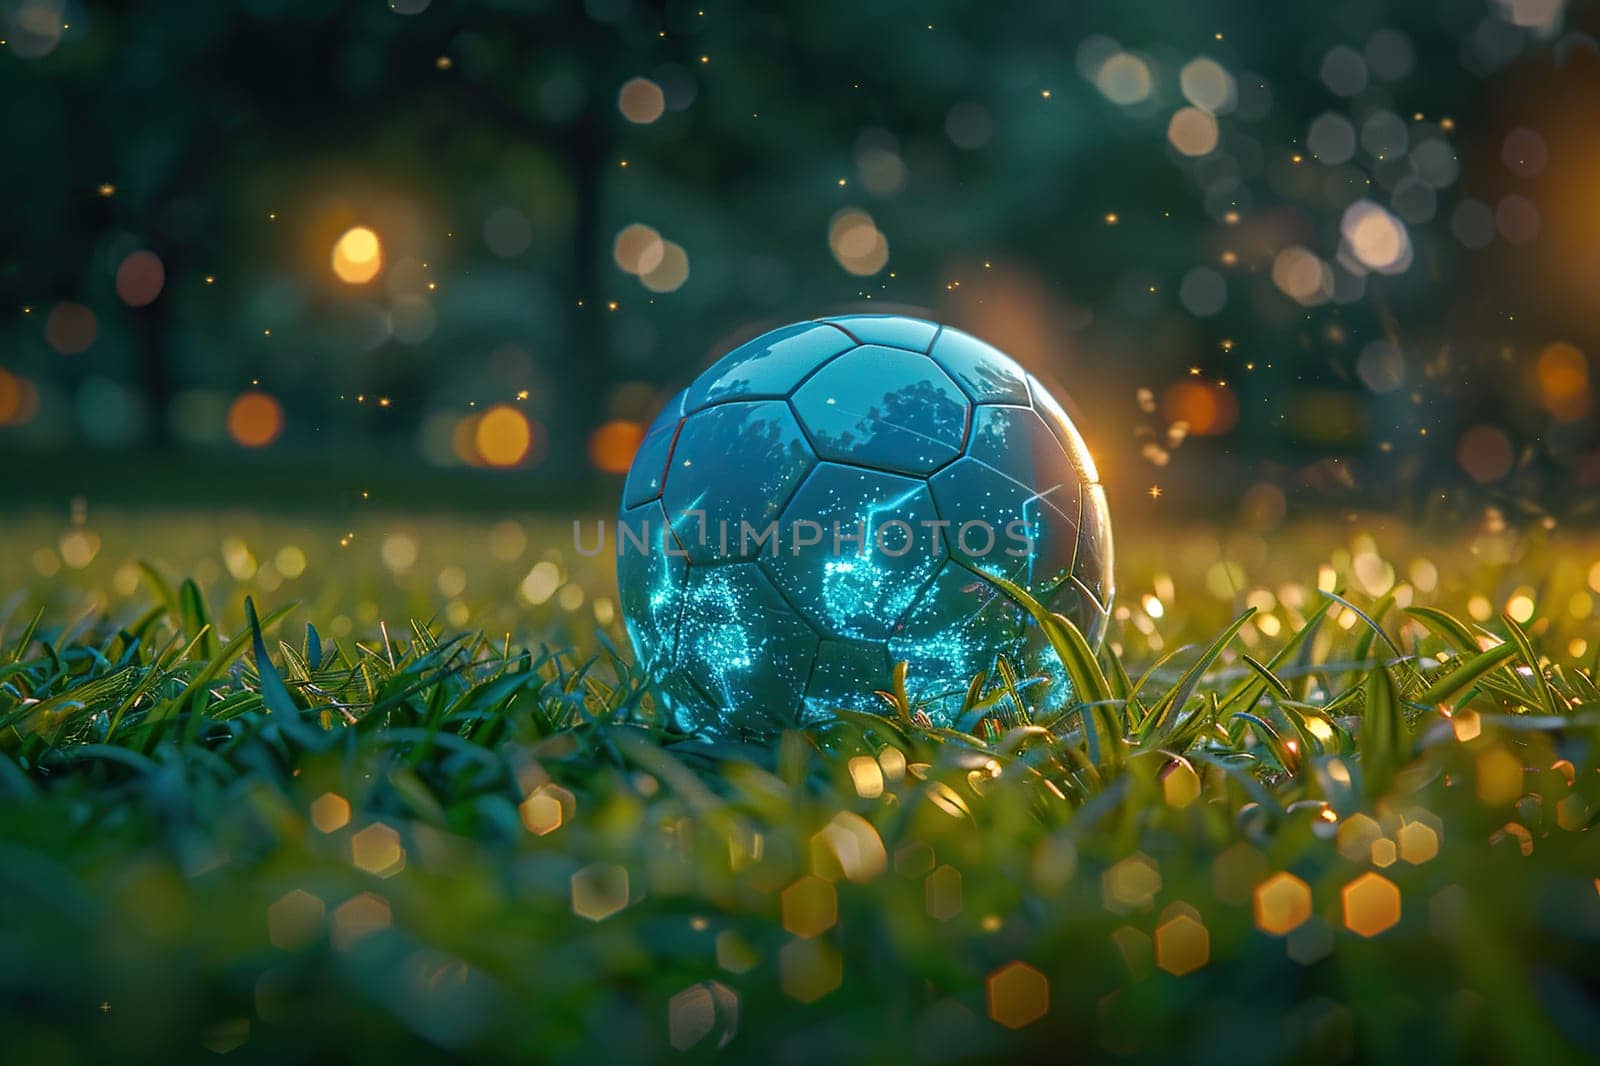 Neon soccer ball on green grass.